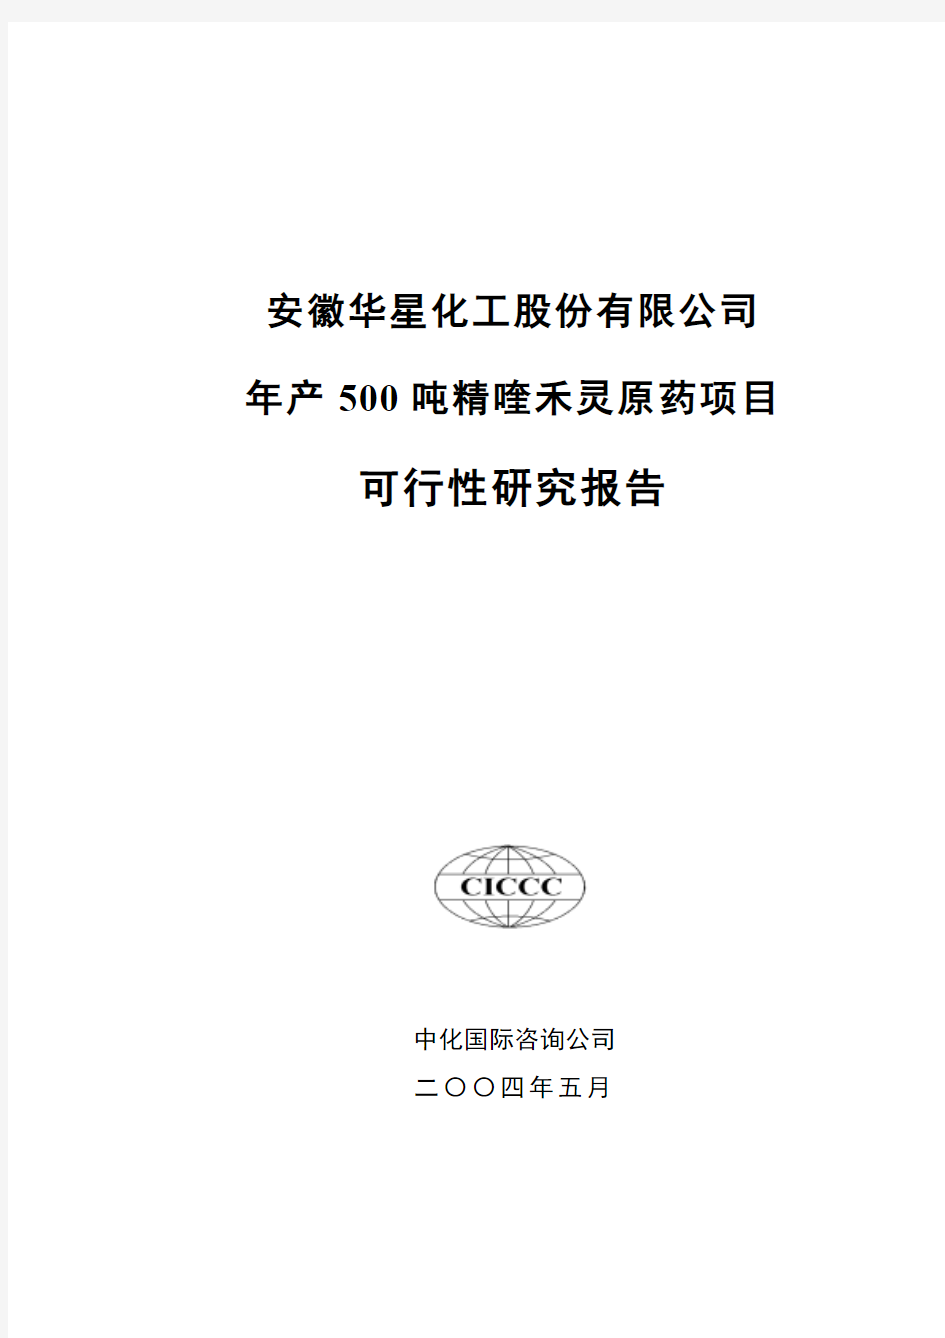 安徽华星化工股份有限公司年产500吨精喹禾灵原药项目可行性研究报告